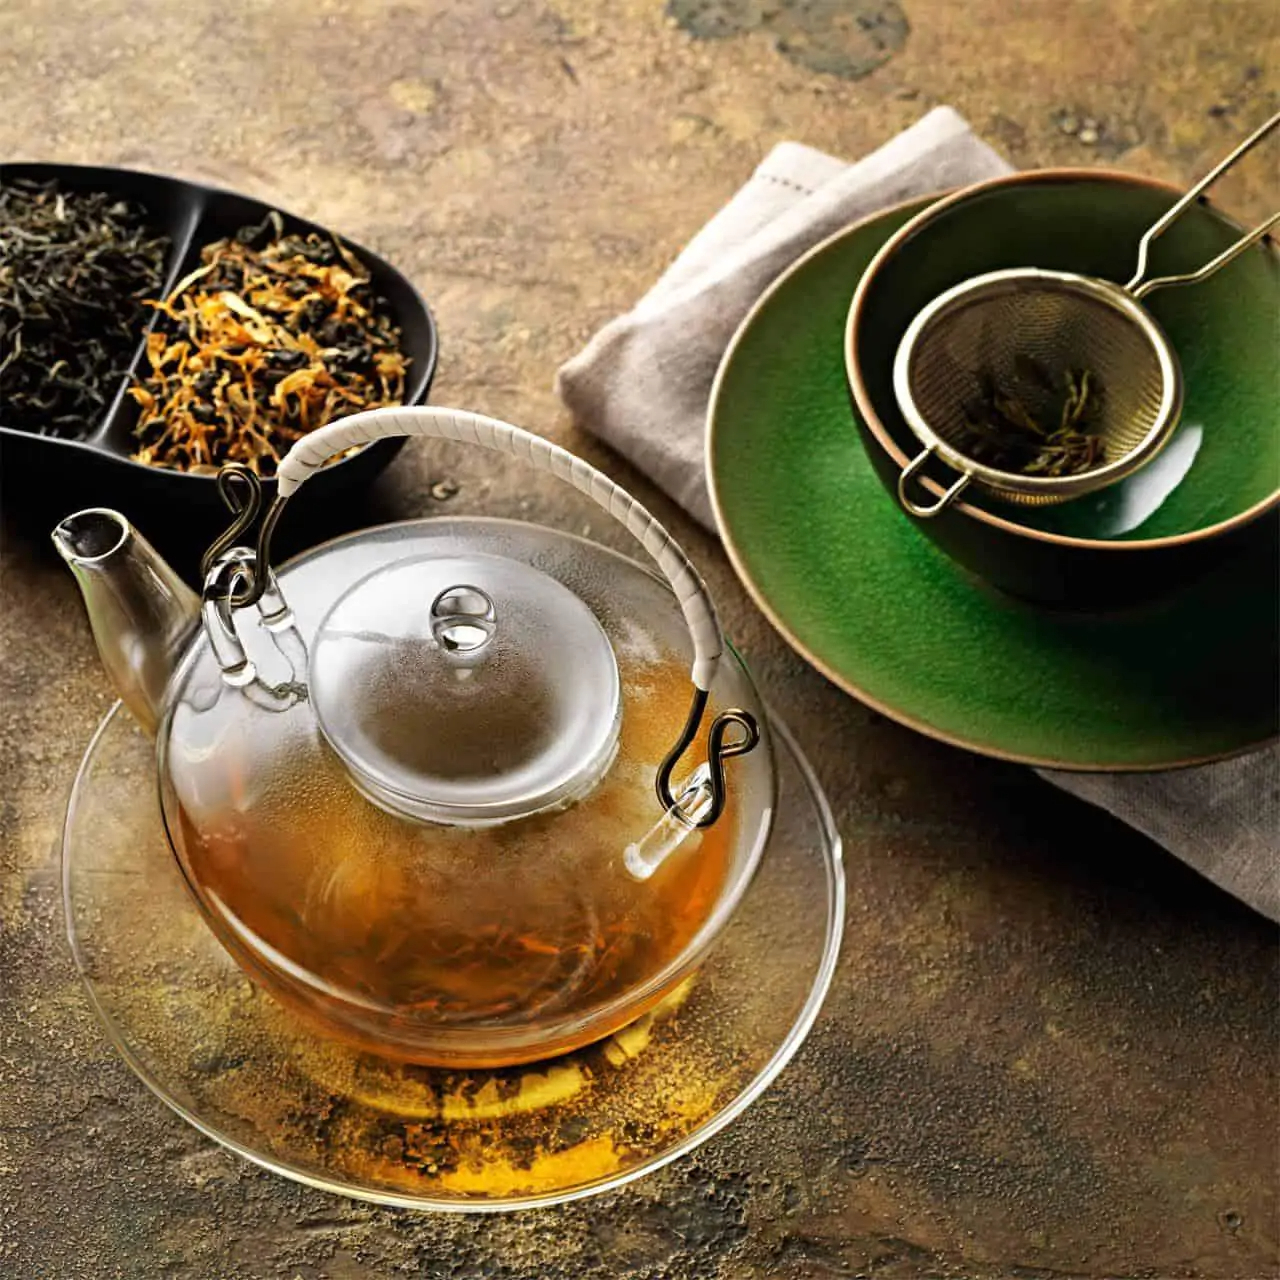 Nieuw bij Koffiepiraat: Birchall tea